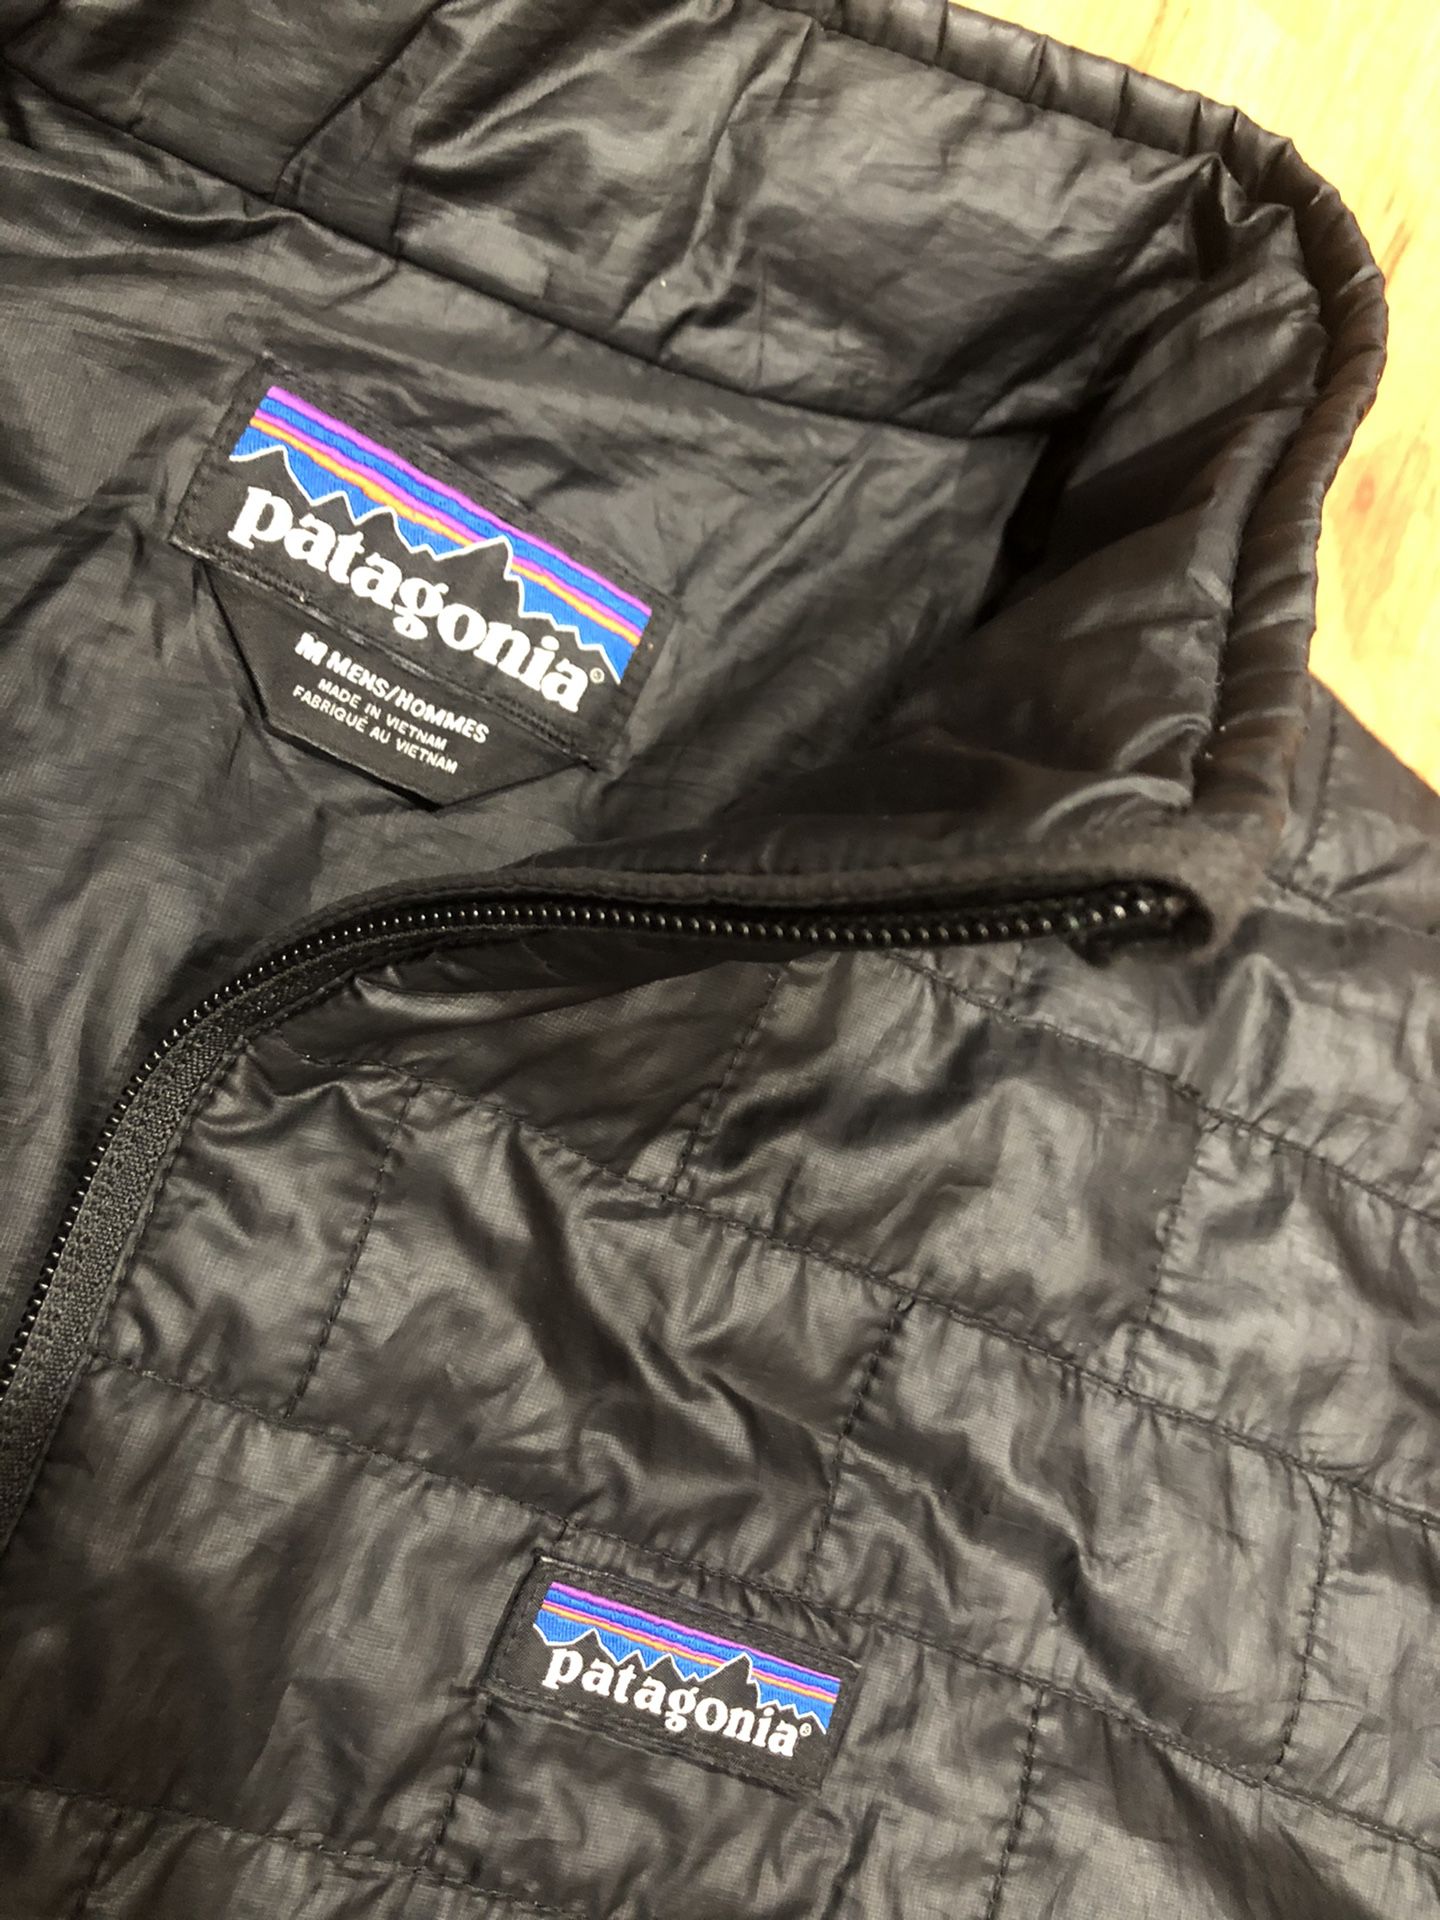 Patagonia pano black men jacket medium! Nice!!